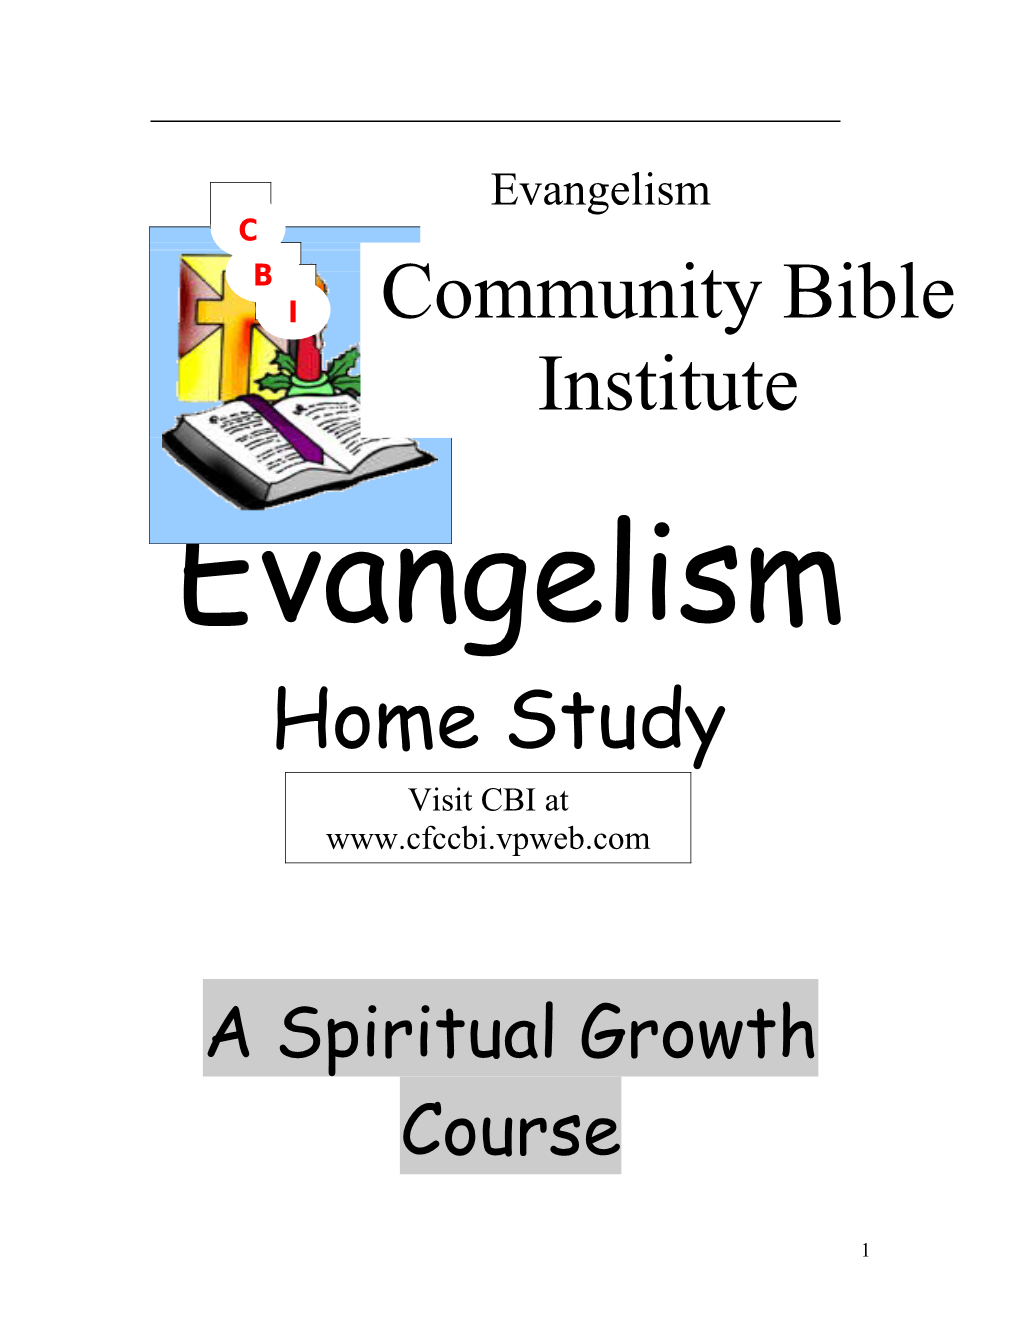 A Spiritual Growth Course